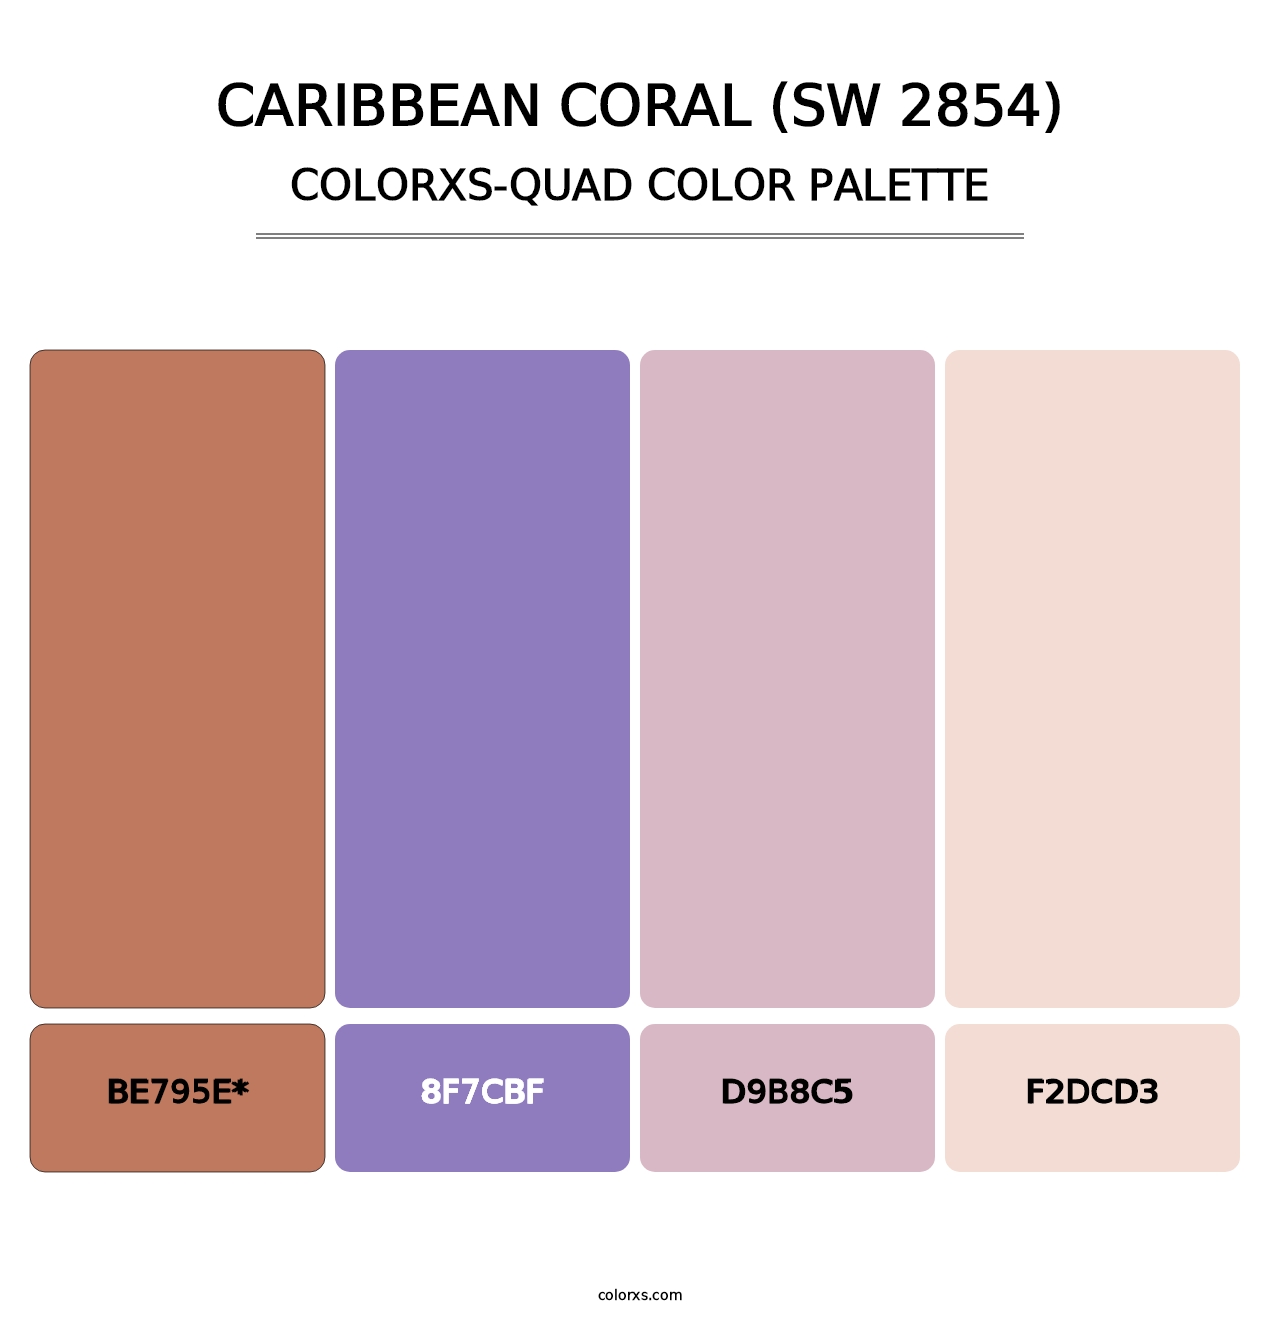 Caribbean Coral (SW 2854) - Colorxs Quad Palette